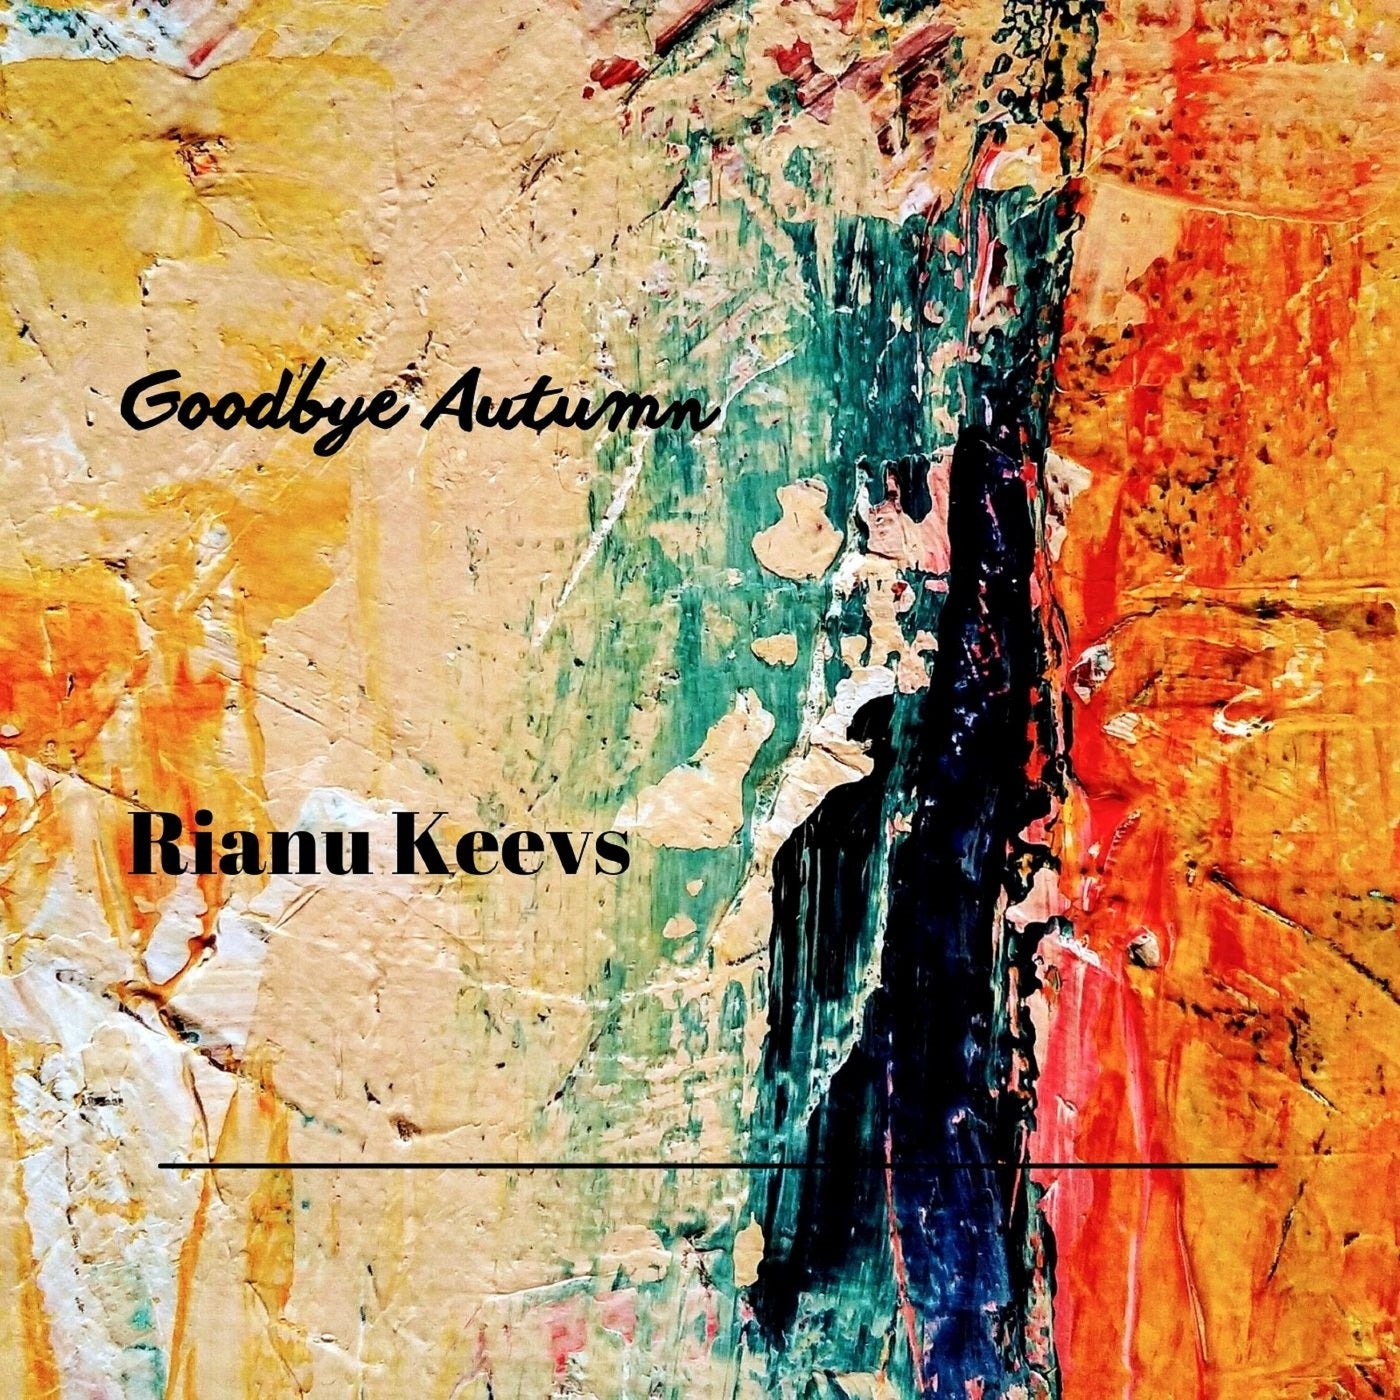 Rianu Keevs - Goodbye Autumn [AUR0403]